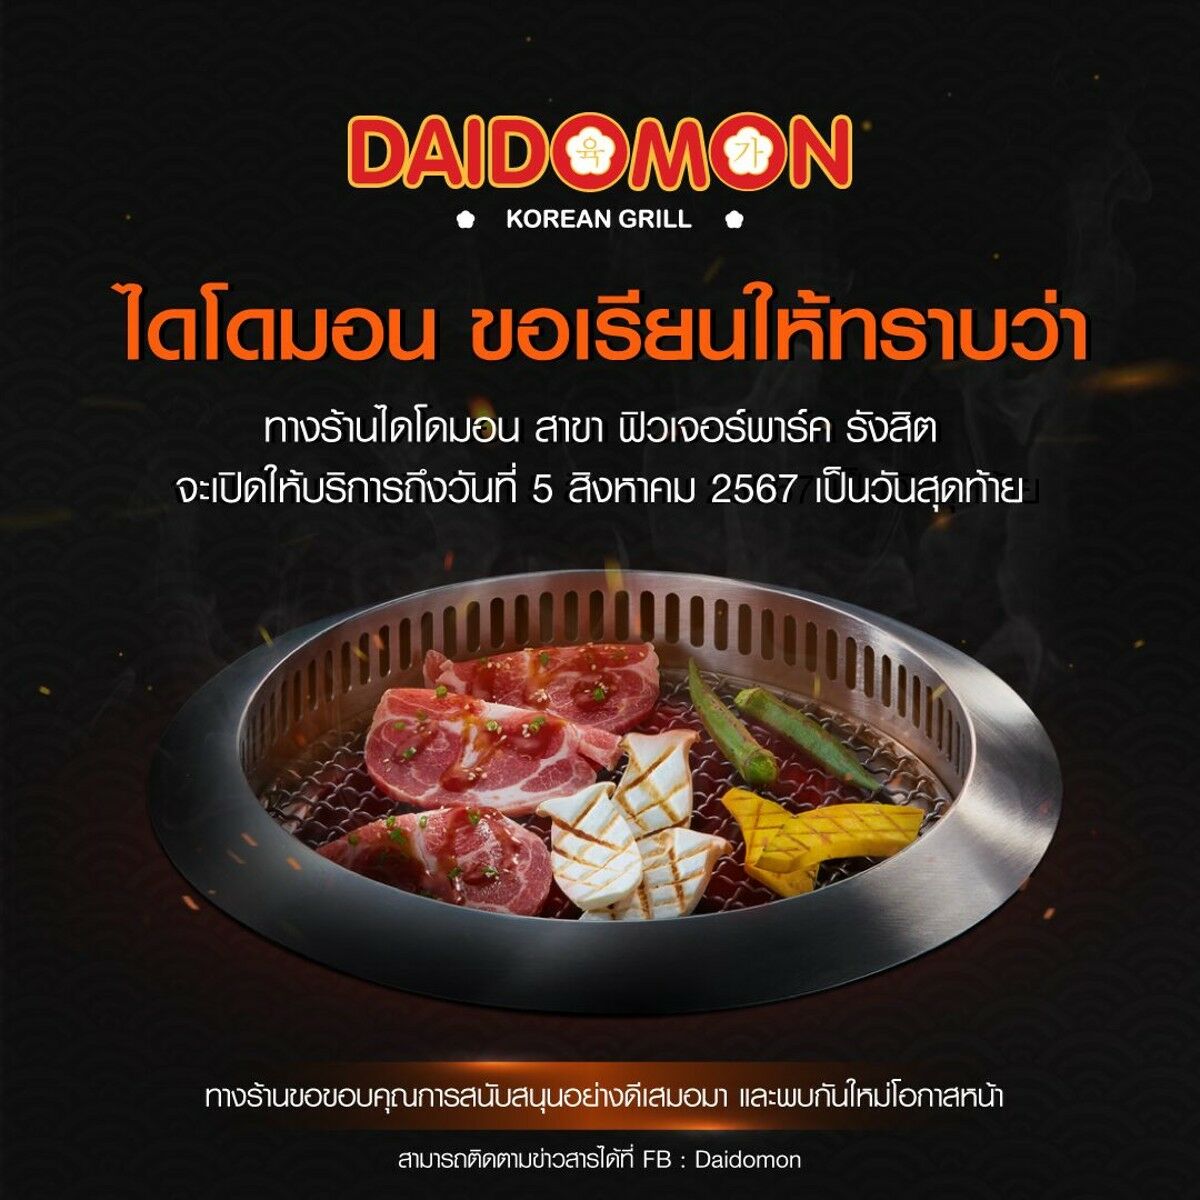 Buffet restaurant Daidomon to close final branch in Thailand